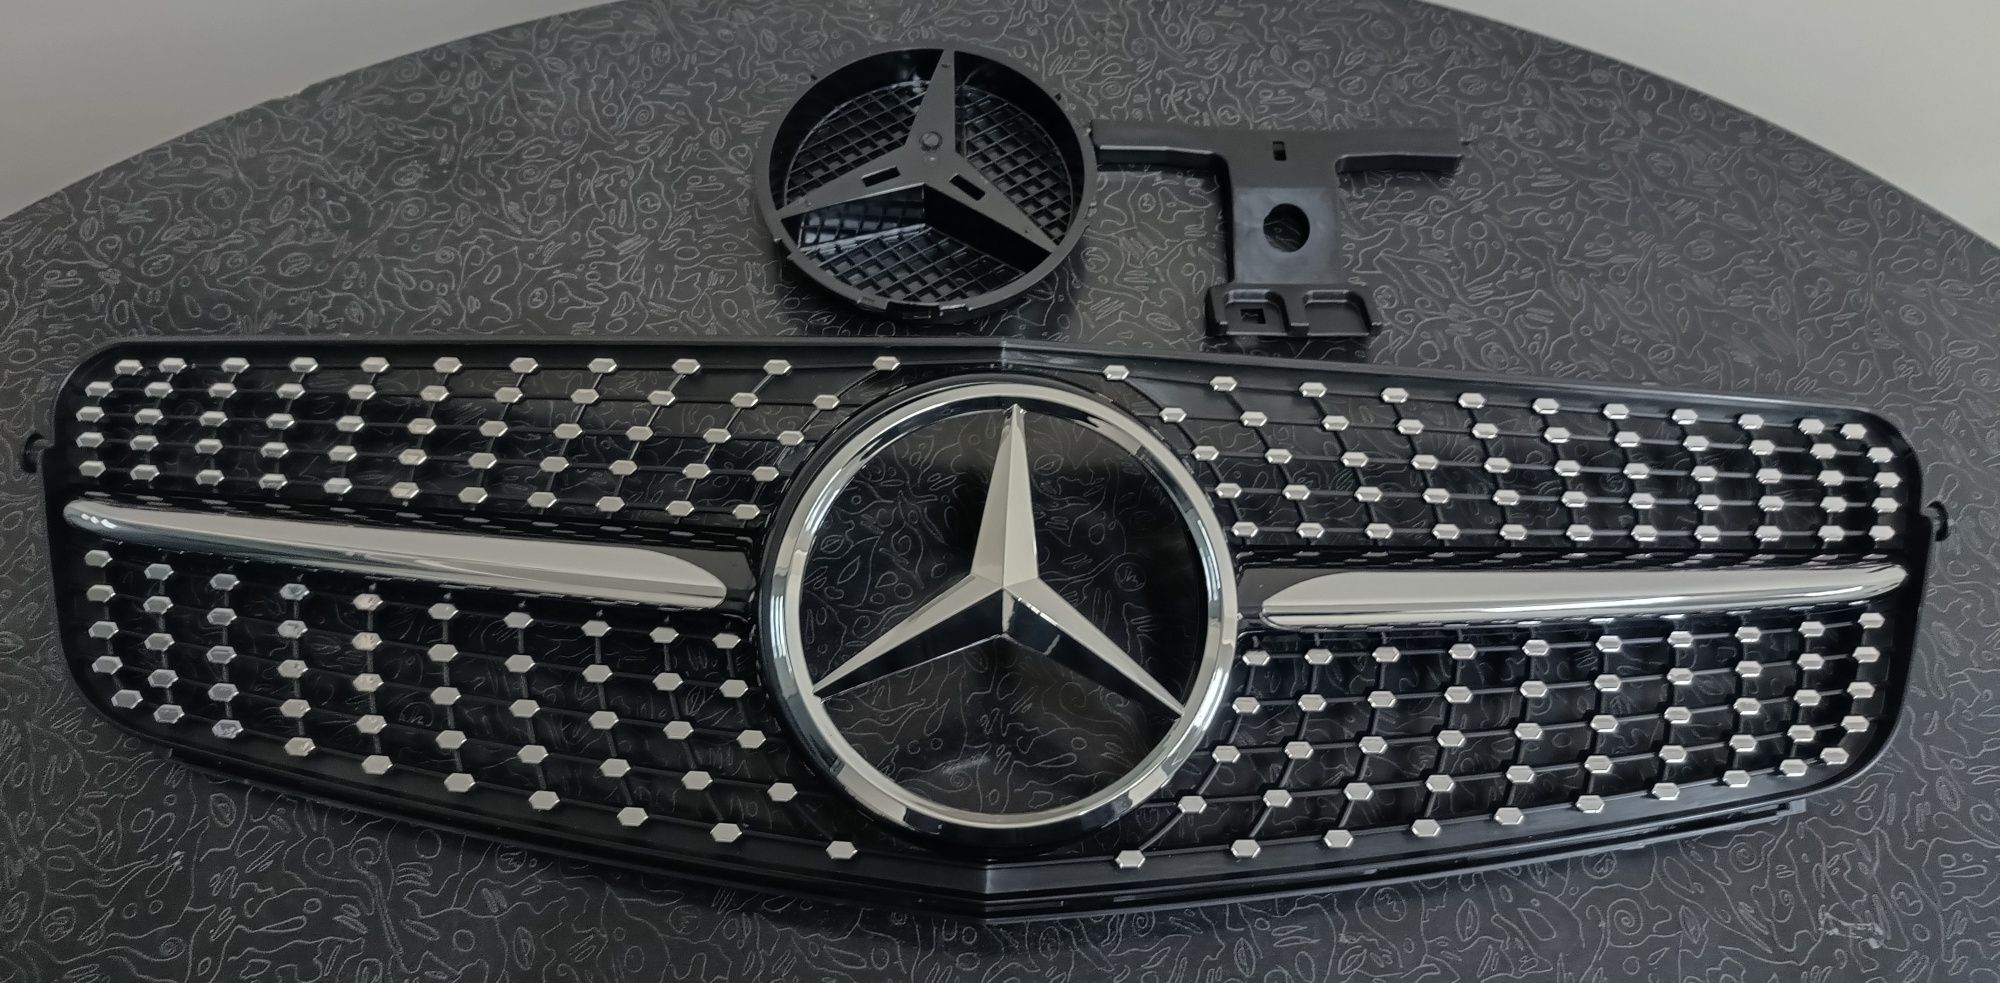 Решетка за Mercedes Benz W204+емблема НОВА